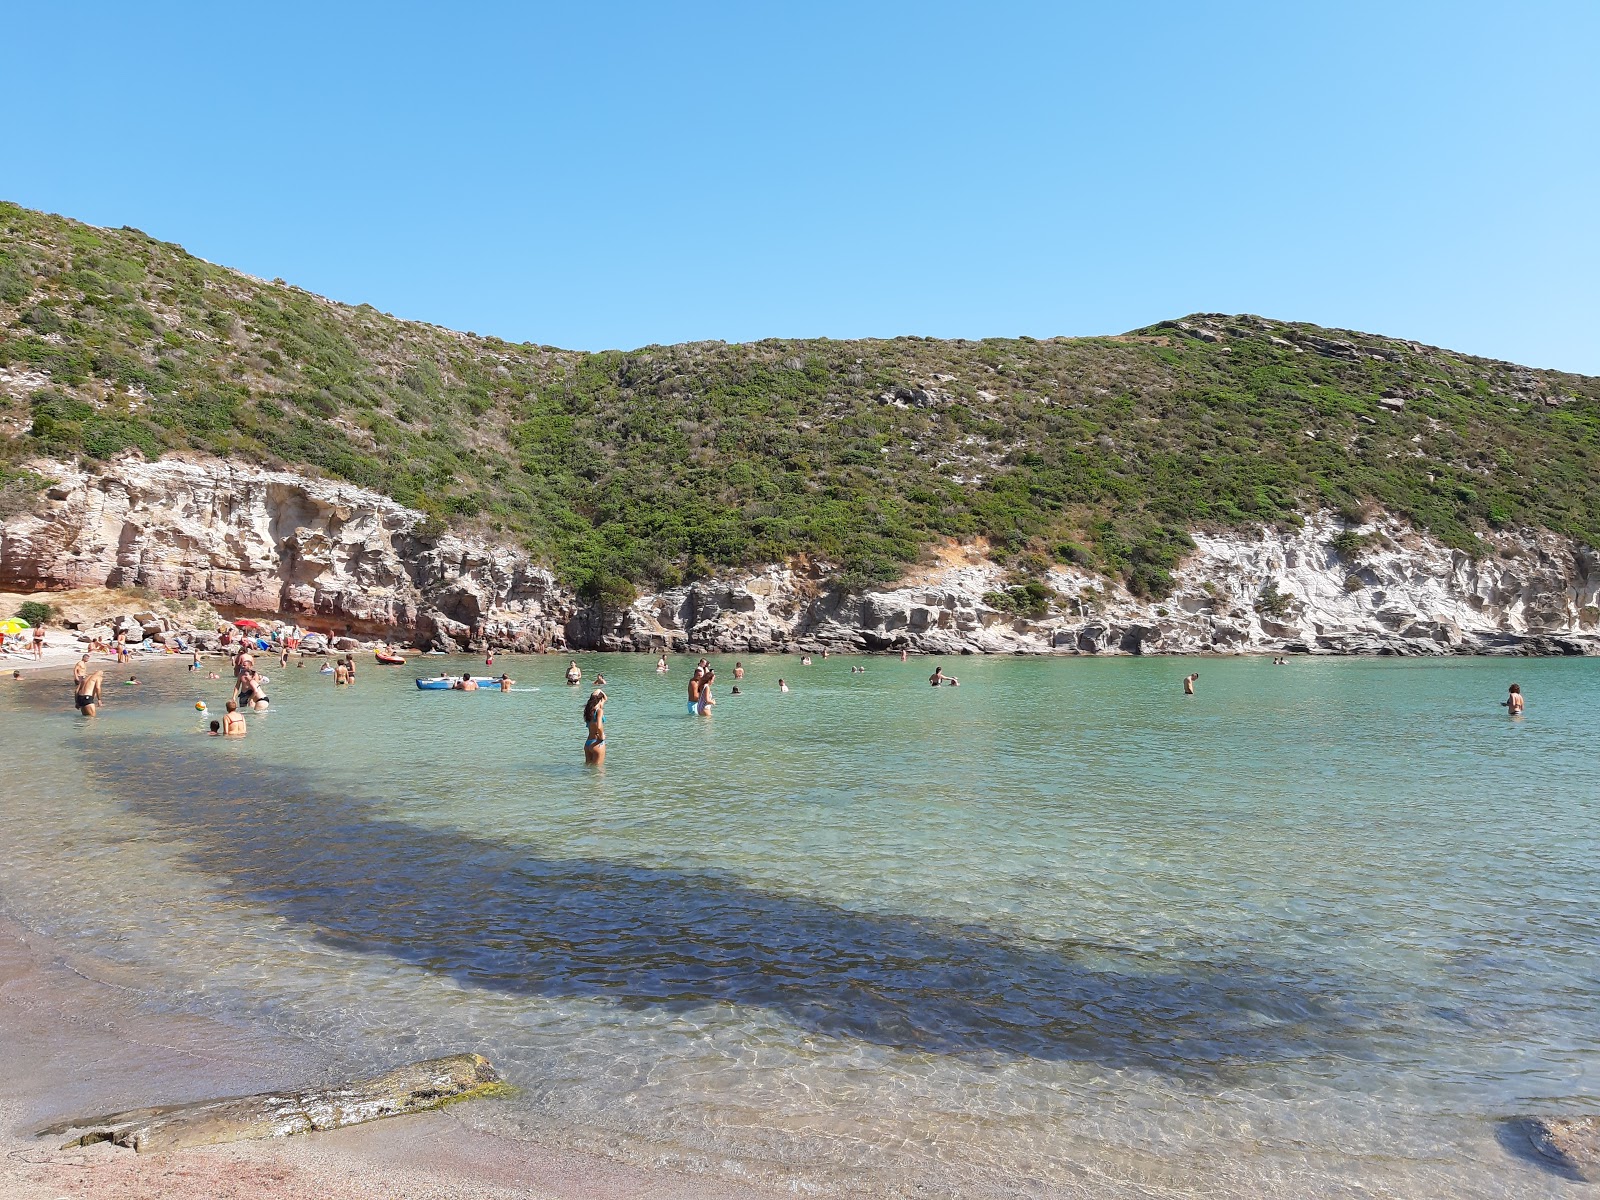 Fotografija Plaža Cala Lunga nahaja se v naravnem okolju